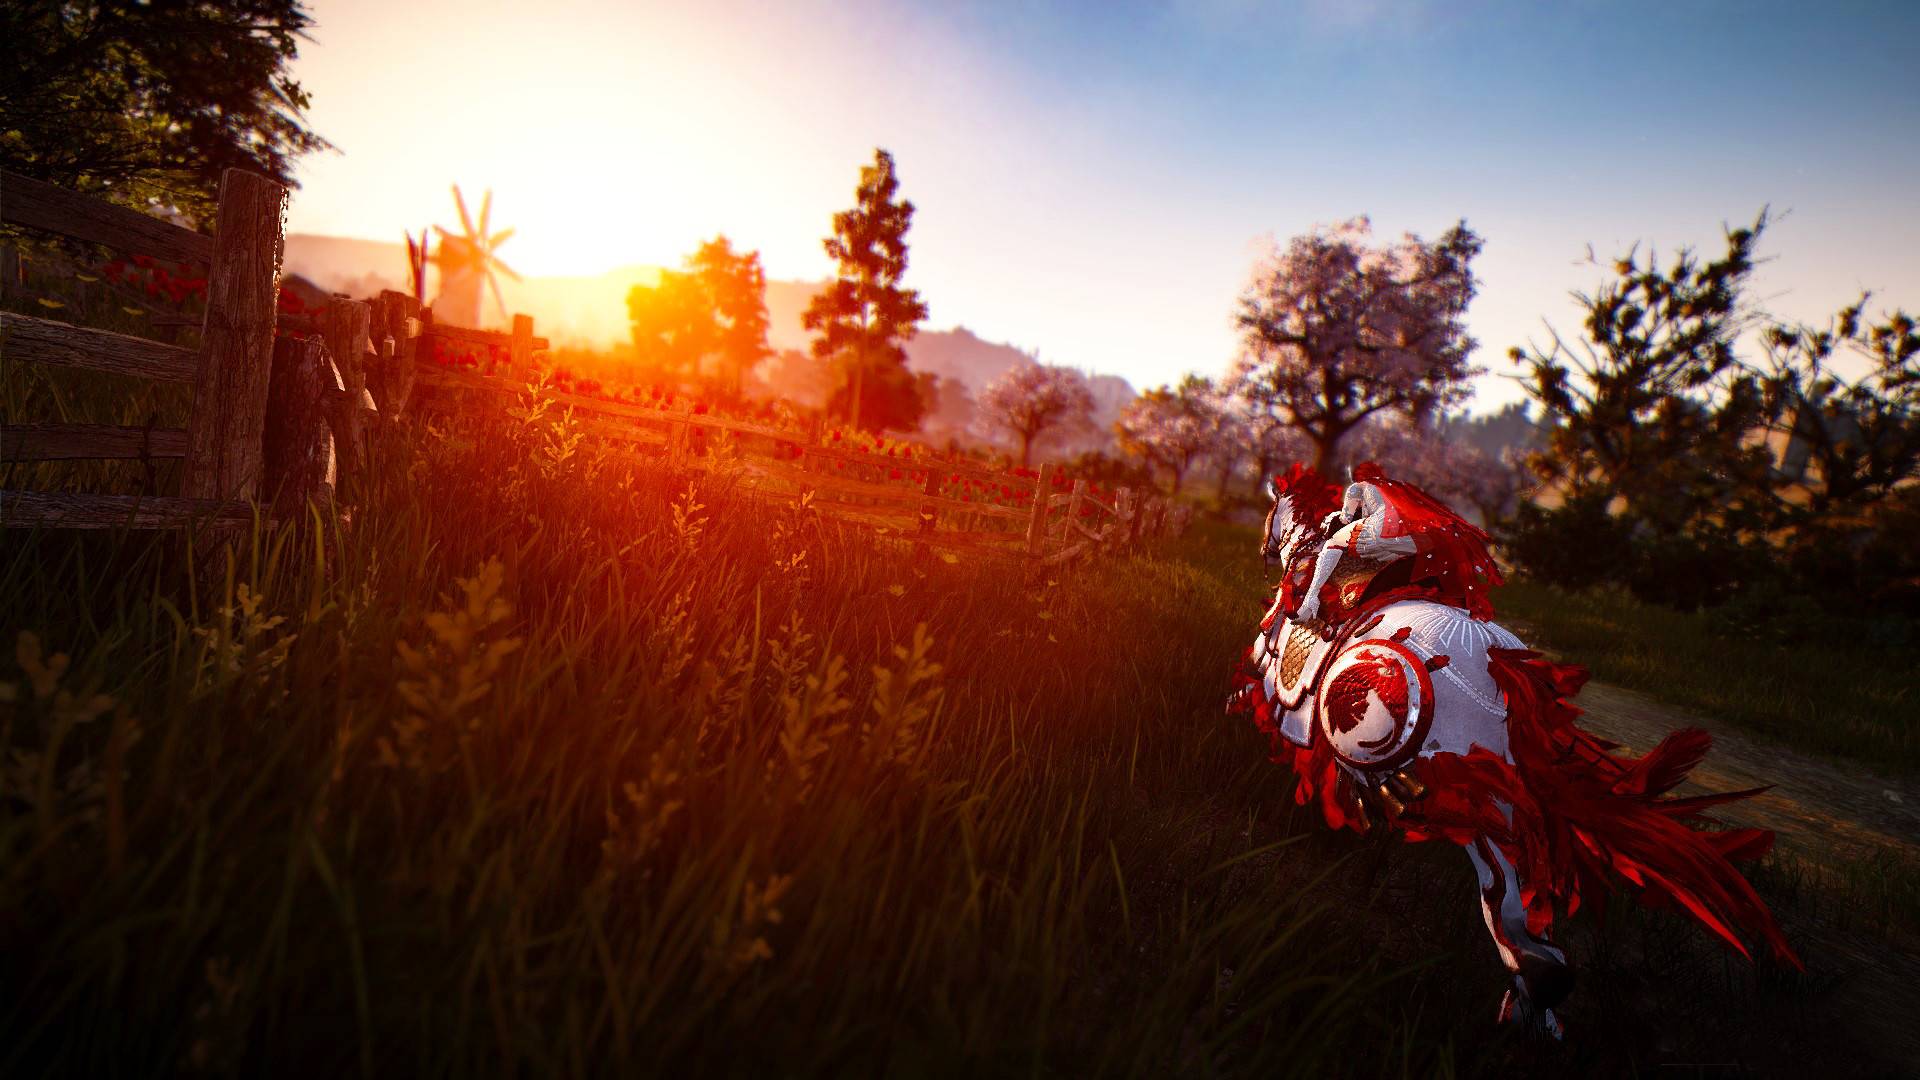 Beste MMORPG -spill: Black Desert Online. Bildet viser en mann som rir på en hest mot en solnedgang